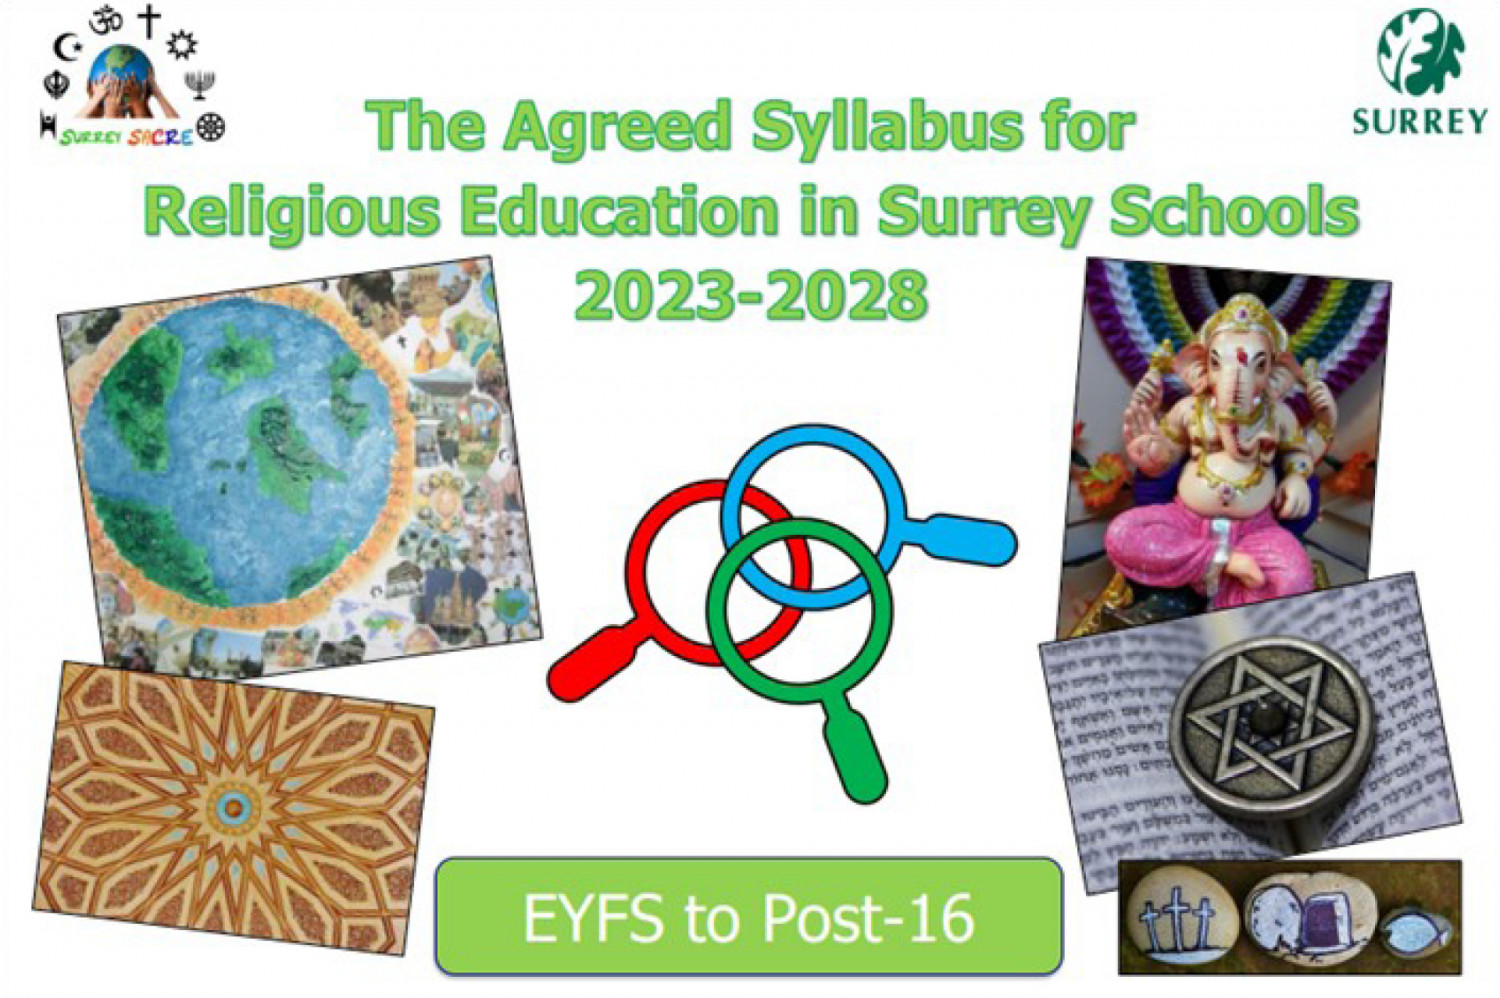 Agreed syllabus logo